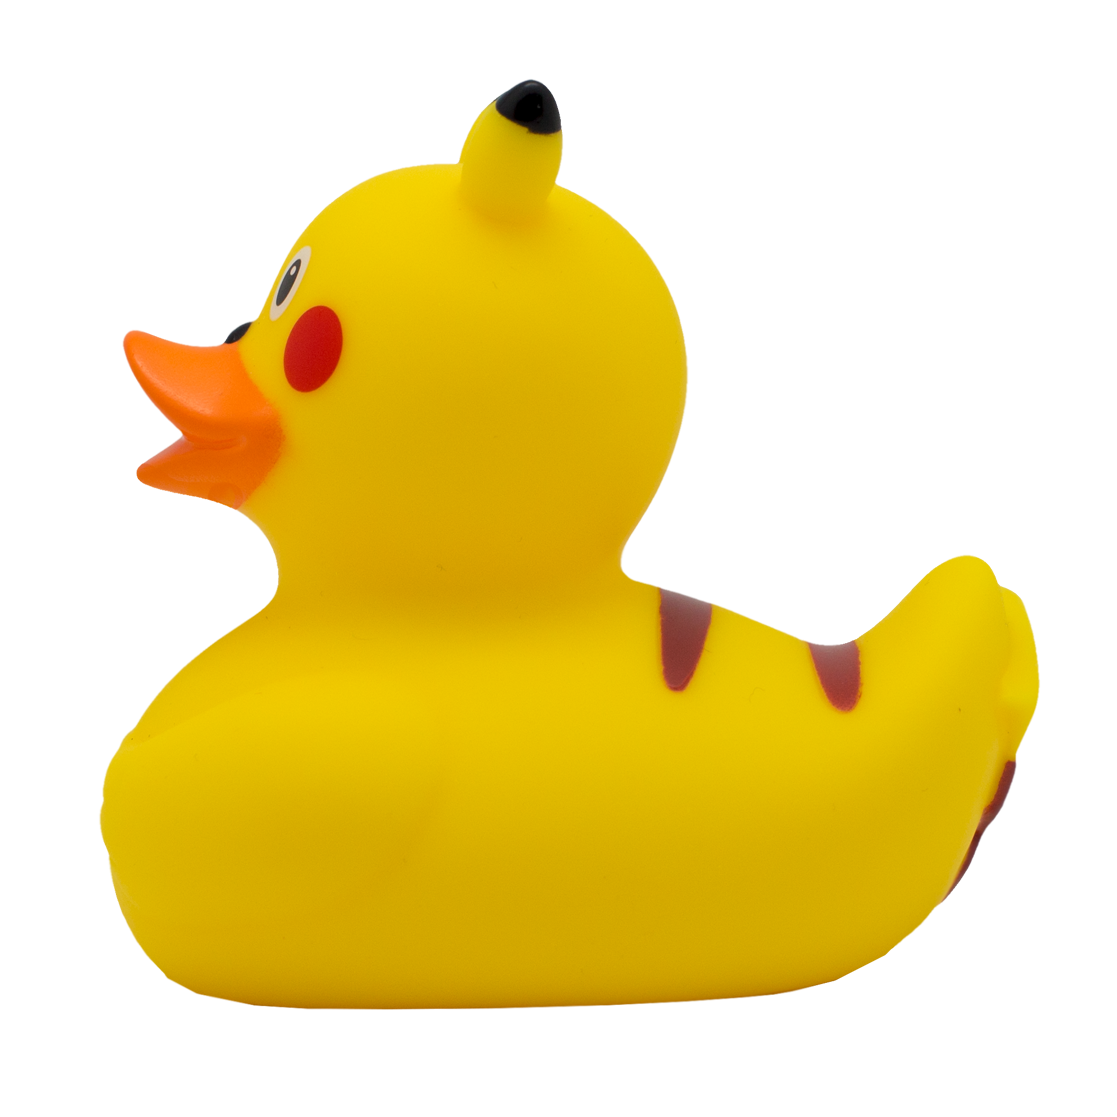 Piku duck